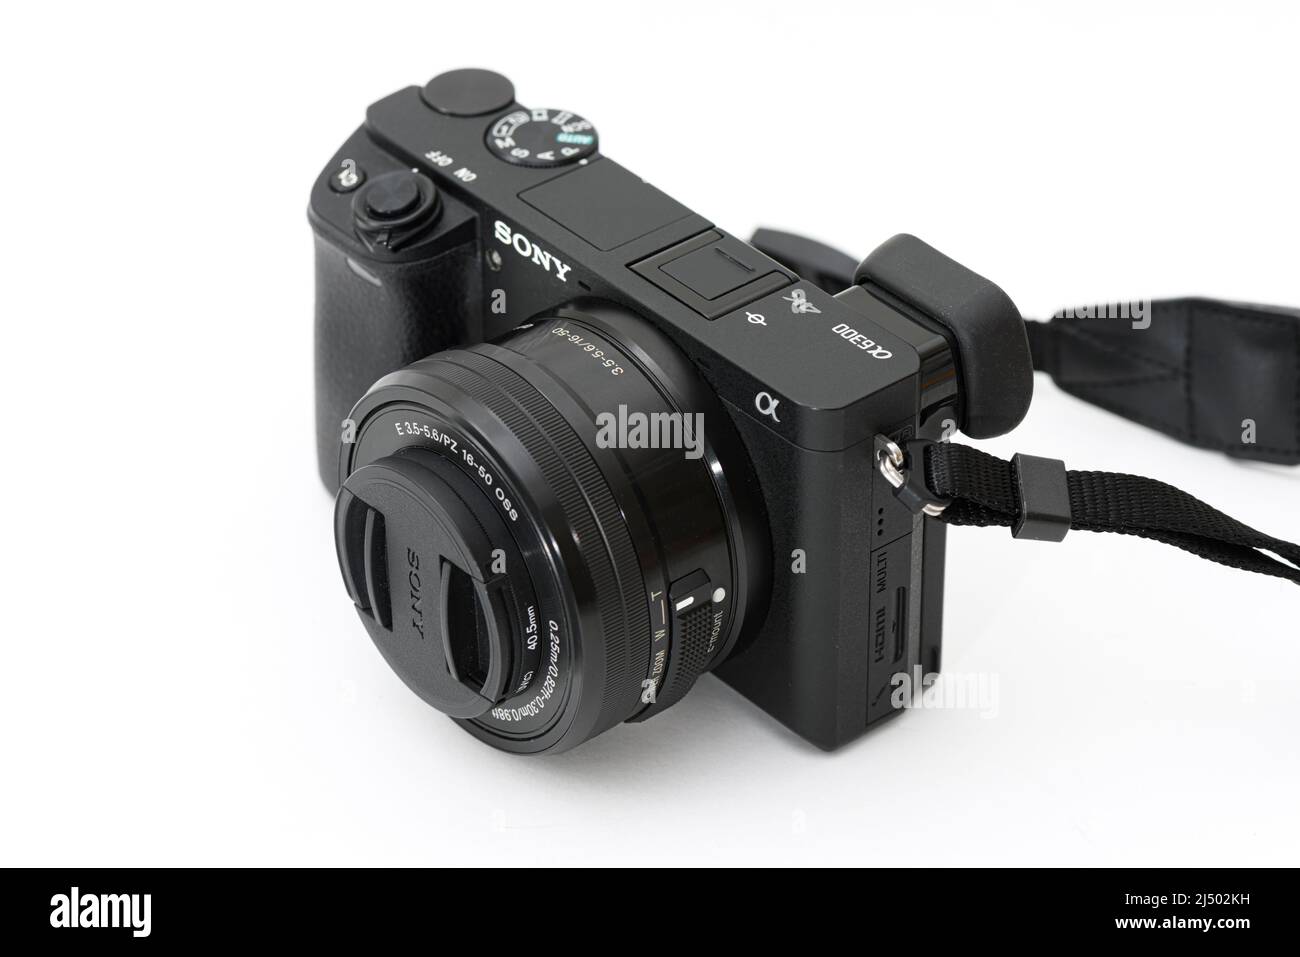 Sony a6300 immagini e fotografie stock ad alta risoluzione - Alamy